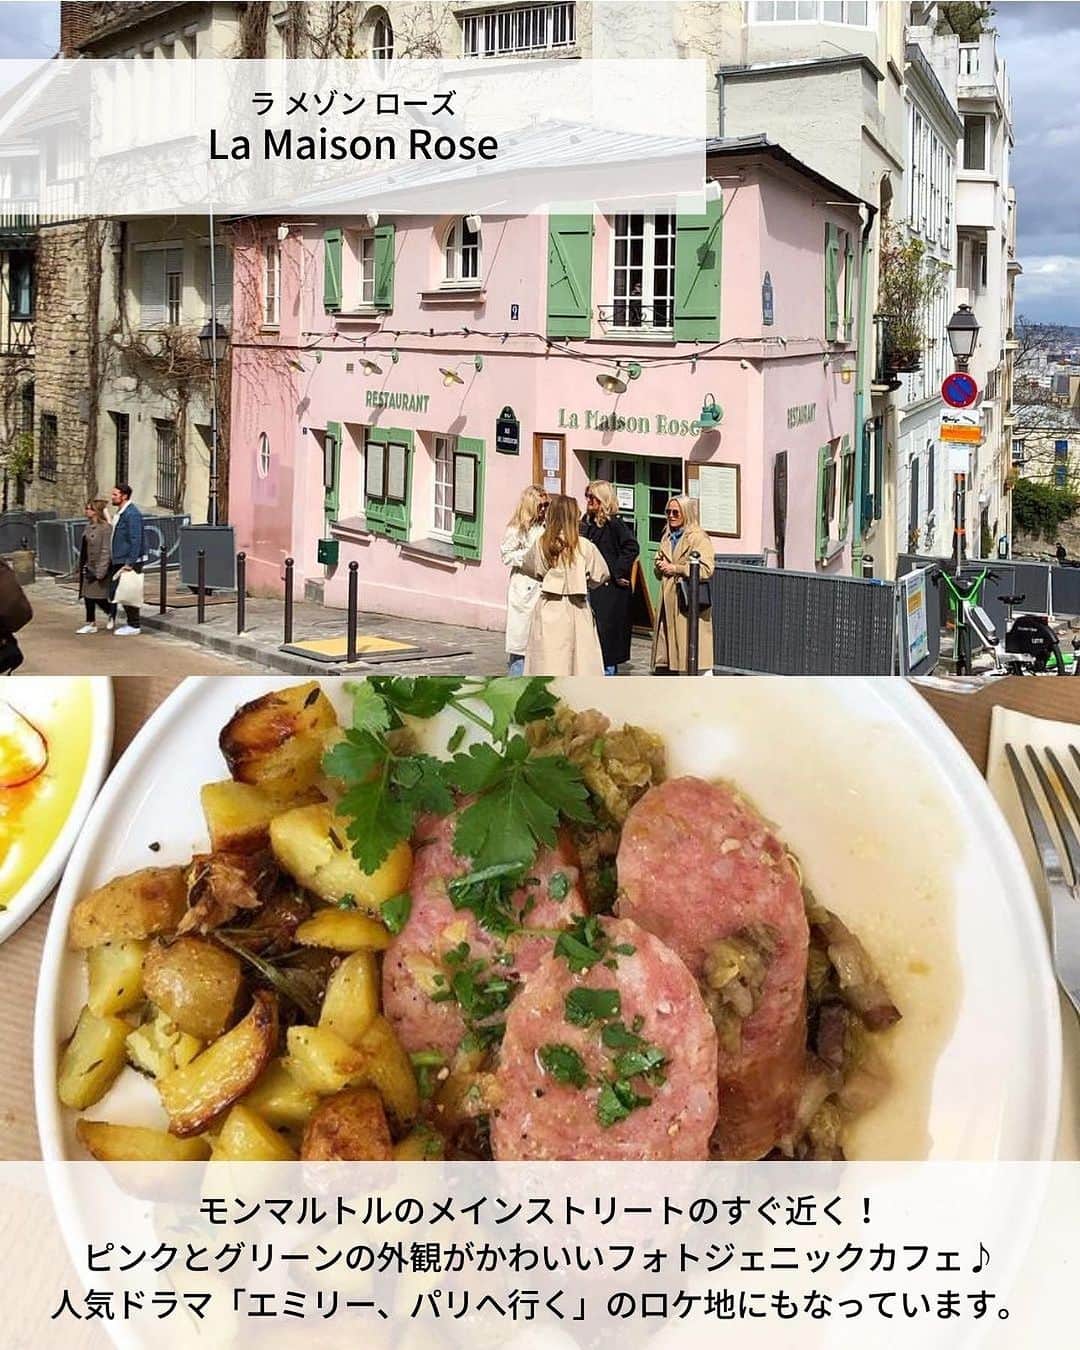 旅工房公式さんのインスタグラム写真 - (旅工房公式Instagram)「＼老舗からおしゃれスポットまで！／  #パリカフェ #フランスカフェ   こんにちは！☺  今回は人気の旅行先フランス・パリから、旅行中絶対に行きたいおしゃれすぎるカフェを6つ特集しました✨  フランス旅行に言ったらぜひ本場のカフェ文化を味わいたい！  どこもおしゃれすぎて、優雅なカフェタイムを味わえそうですね🎶   旅行先の参考にぜひしてみてください＼(^o^)／ 💚   ━━━━━━━━━━━━━━━   ▽お写真ありがとうございます❣   📍Carette’（ @caretteofficiel ）📸@y_k_rinpi さん  エッフェル塔のすぐ近くのトロカデロ店とマレ地区のヴォージュ広場店の2つの店舗があり、どちらも観光地からすぐ近く！  軽食から、スイーツまで色々なメニューがあるので観光の休憩に◎   📍Café des Deux Moulins（@cafe.des.deux.moulins ）📸@meimi.sap_obi さん  日本でも人気の映画「アメリ」のロケ地として有名なカフェ！  店内に入ると映画の世界に入ったような気分を味わえます。  映画にも出てきたクレームブリュレが人気メニュー◎   📍Café de Flore （@lecafedeflore ）📸@k0001112 さん  パリのカフェ巡りで外せない人気の老舗カフェ♪  朝7時半からやっているので、朝食に訪れる人が多いんだとか！  眺めの良いテラス席でゆったりとした時間を楽しむのがおすすめ◎   📍La Maison Rose （lamaisonroseofficial ）📸@have_tea_time さん  モンマルトルのメインストリートのすぐ近く！  ピンクとグリーンの外観がかわいいフォトジェニックカフェ♪  人気ドラマ「エミリー、パリへ行く」のロケ地にもなっています。   📍Café Lapérouse （@cafelaperouse_paris ）📸@fumixparis さん  コンコルド広場に面していて、エッフェル塔を見ながらのカフェタイムが過ごせるスポット♪  店内のインテリアもとてもおしゃれですが、おすすめは日差しが降り注ぐテラス席です♪   📍Les Deux Magots （@lesdeuxmagots ）📸@miimemo_gohan さん  パリの地元民からも観光客からも愛される必見スポット！ かつてピカソやヘミングウェイなど多くのアーティストが通い詰めたことでも有名なカフェなんですよ♪   この記事を読んで、ぜひ次回の海外旅行の参考にしてみて下さい＼(^o^)／💛   �   #旅工房 #フランス女子旅 #フランス旅行 #パリ #HIDDENGEMCOFFEE #フランスカフェ巡り #カフェ巡り #CafédeFlore #LaMaisonRose #CaféLapérouse #フランス #LesDeuxMagots #フランスグルメ #パリグルメ #パリ女子旅 #パリ #パリスイーツ #海外旅行好きと繋がりたい #海外旅行 #旅行好きな人と繋がりたい #海外旅行準備 #旅好き女子 #海外旅行行きたい #海外旅行計画 #旅スタグラム #海外一人旅 #旅の記録 #カレット #Carette」7月12日 12時46分 - tabikobo